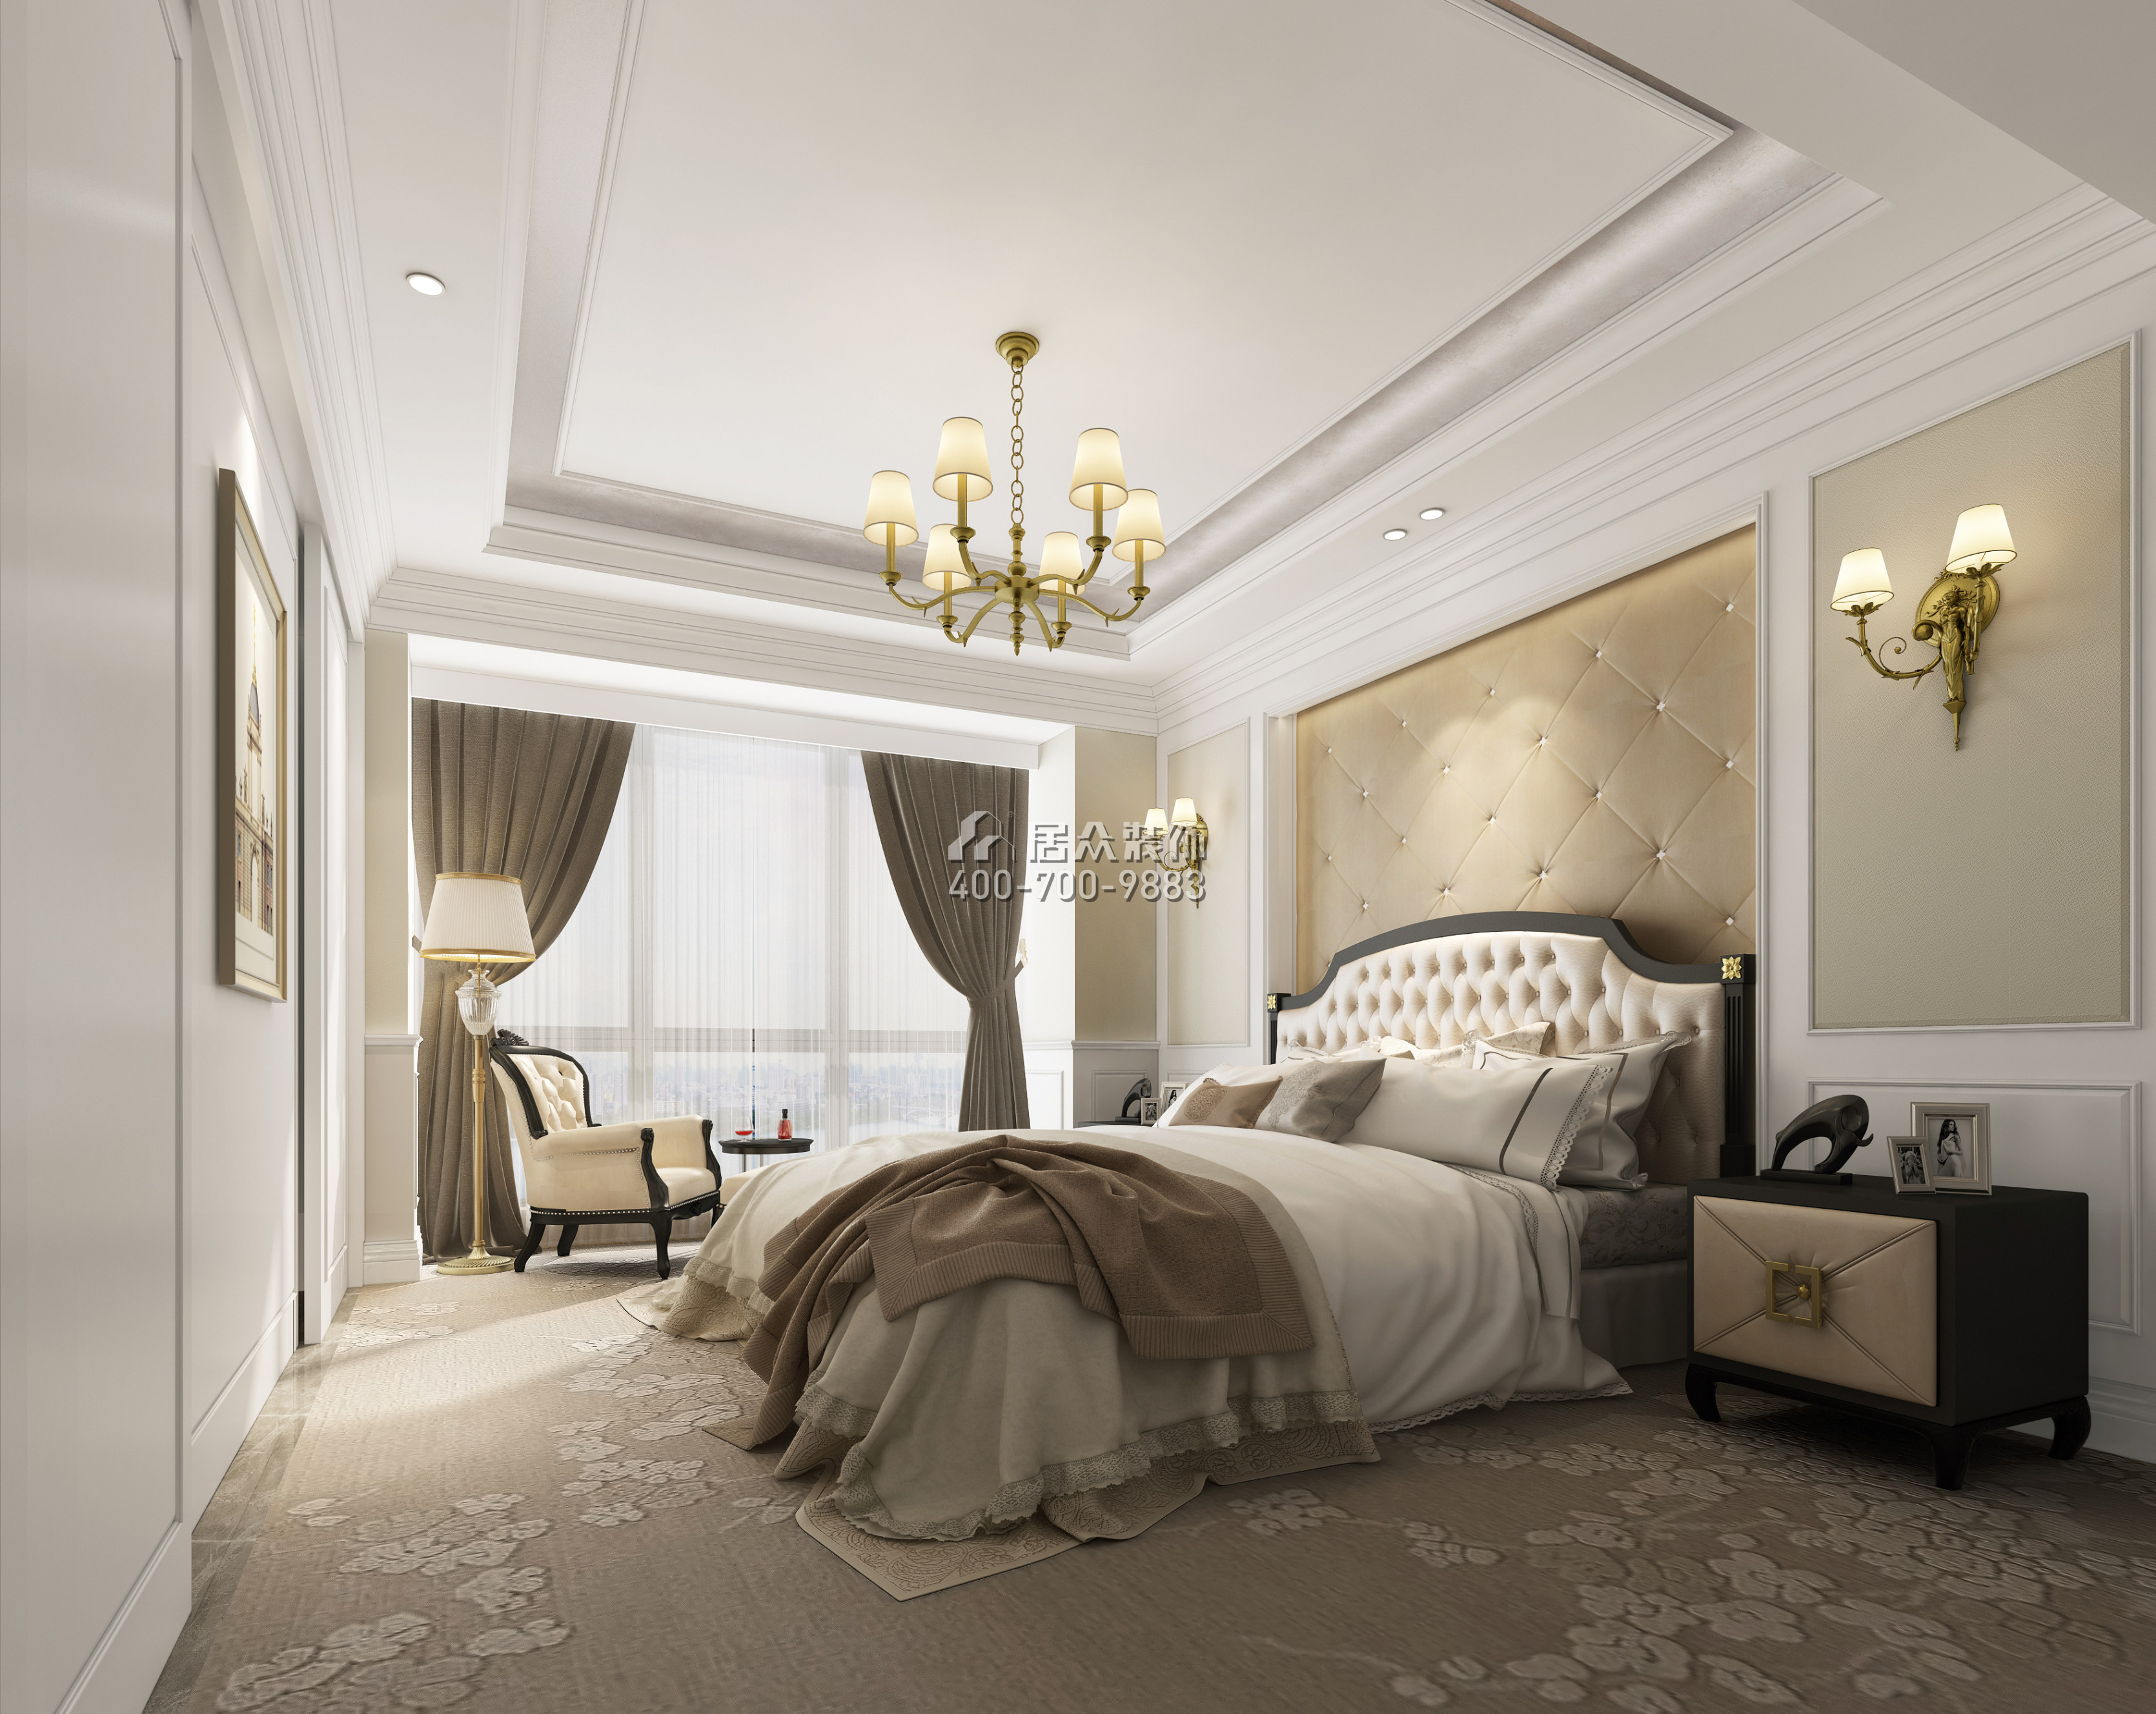 半岛城邦一期180平方米欧式风格平层户型卧室装修效果图